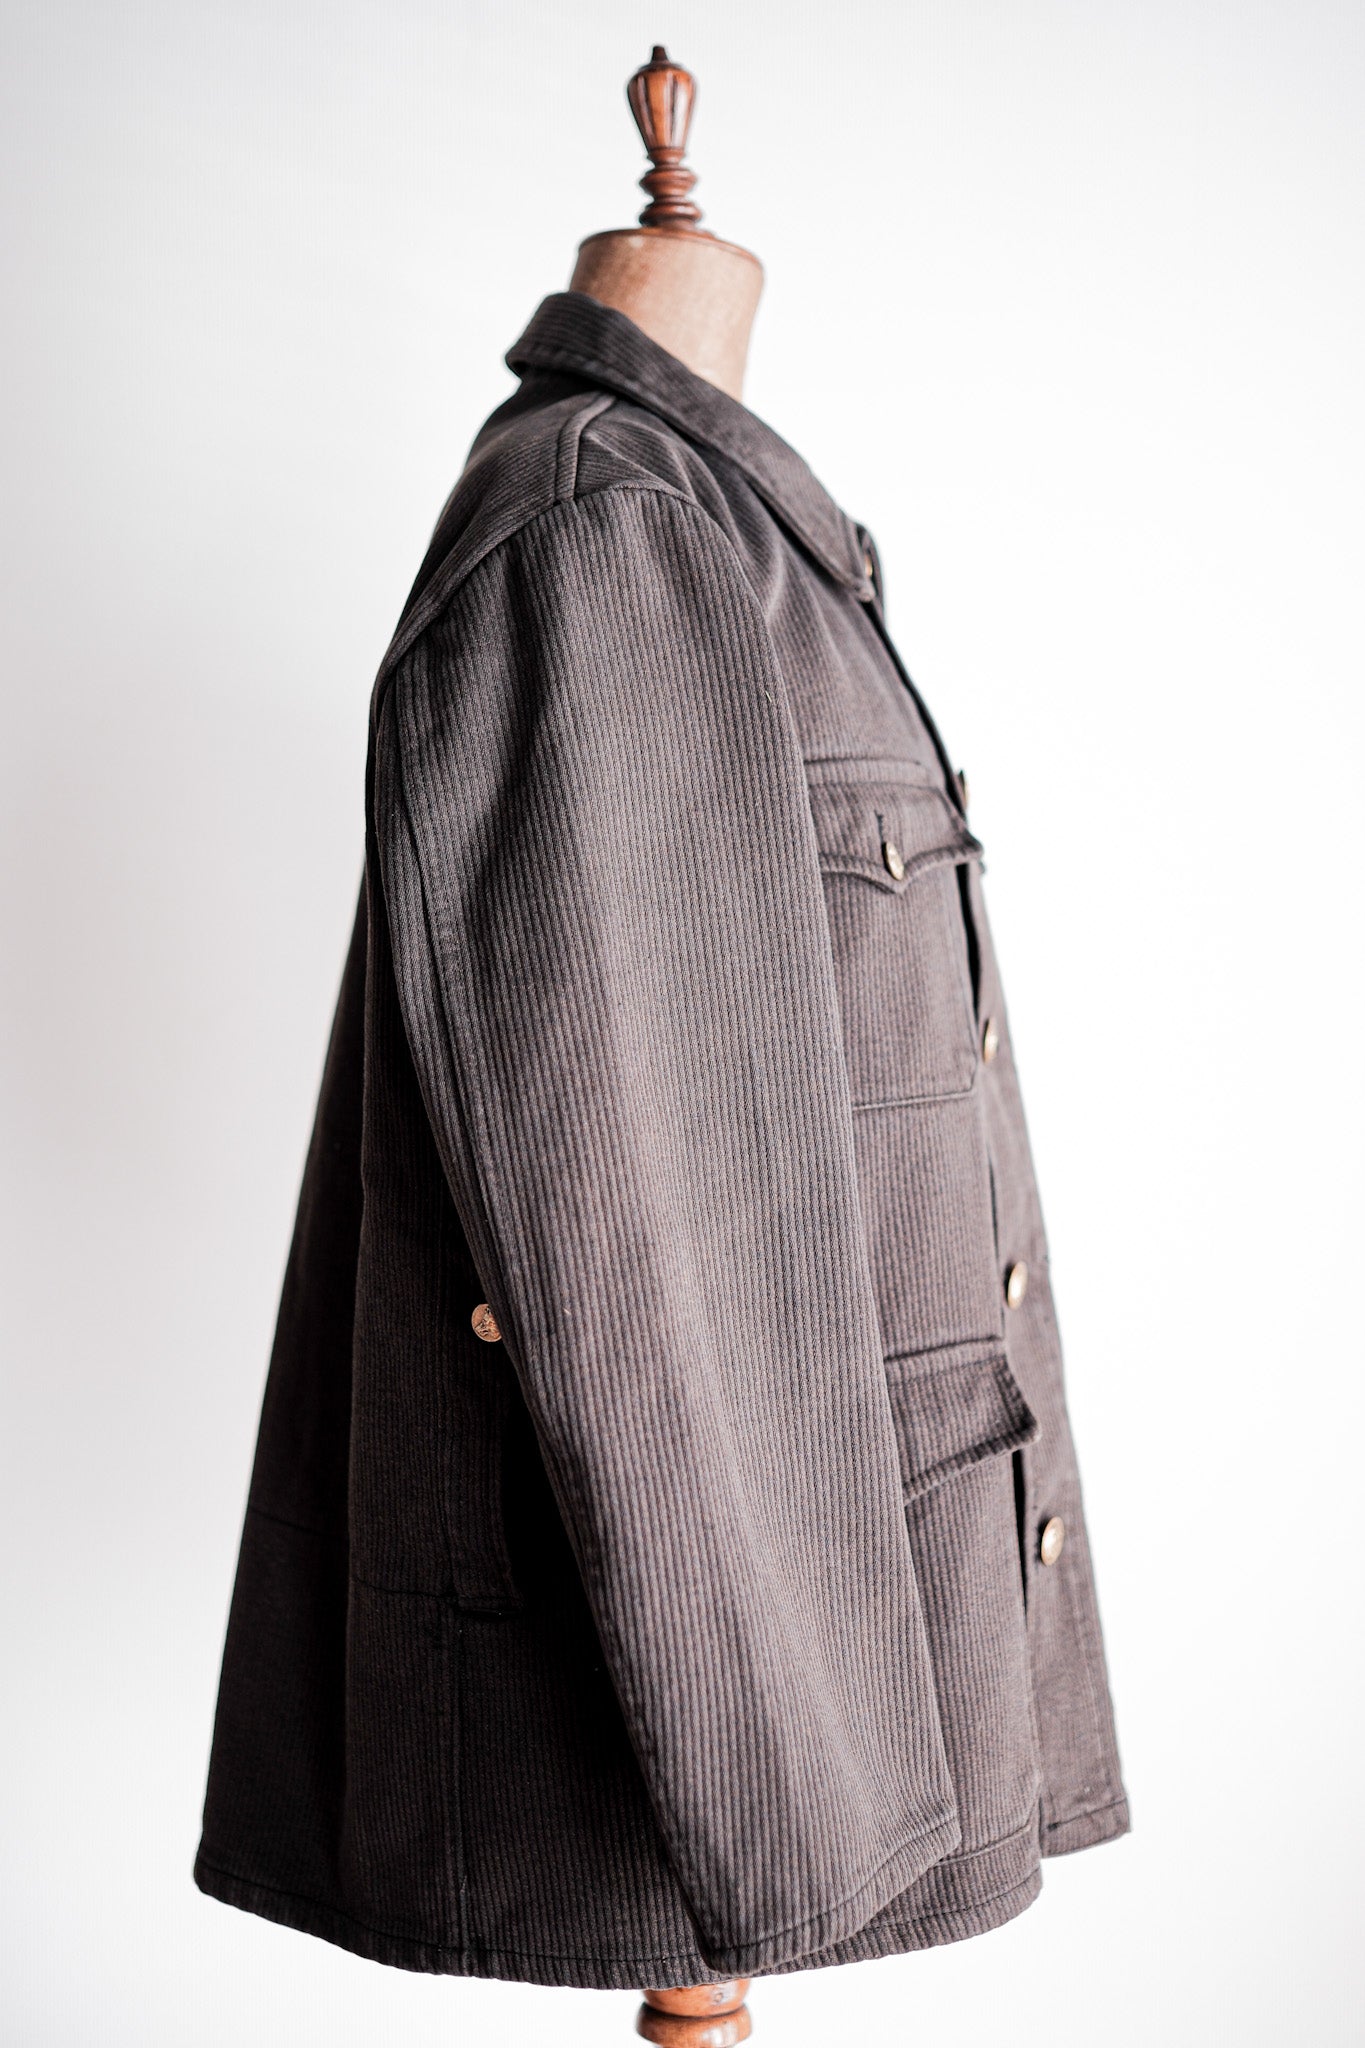 [~ 50 년대] 프랑스 빈티지 브라운 면화 피크 사냥 재킷